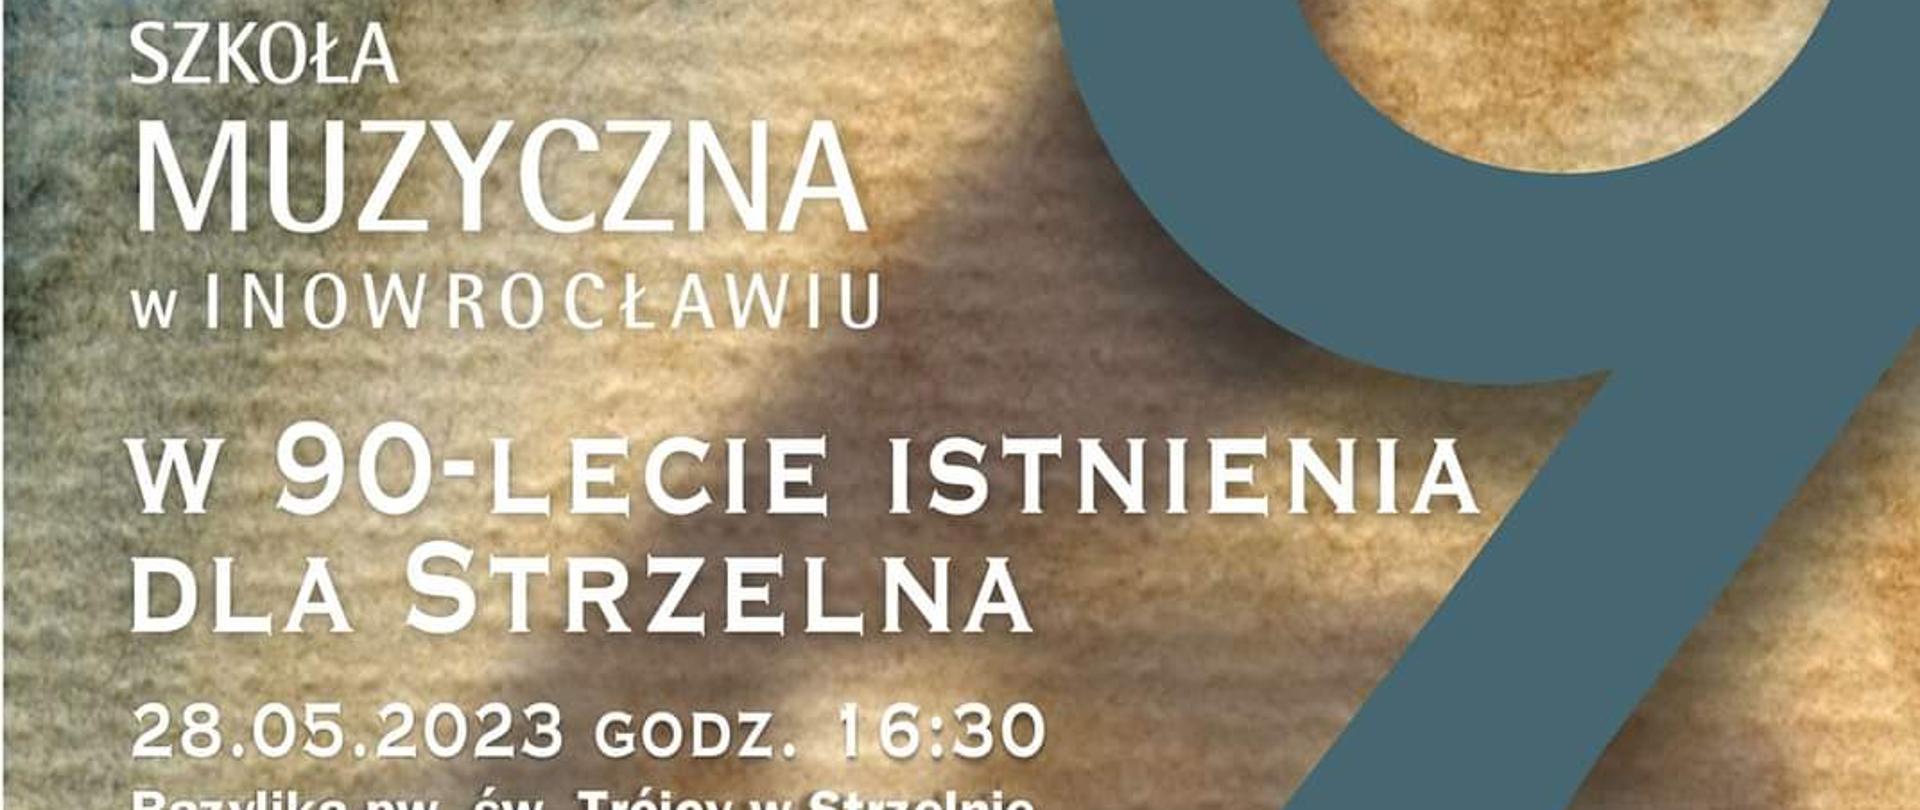 Informacja o koncercie z okazji 90-lecia Szkoły Muzycznej w Inowrocławiu dla Strzelna